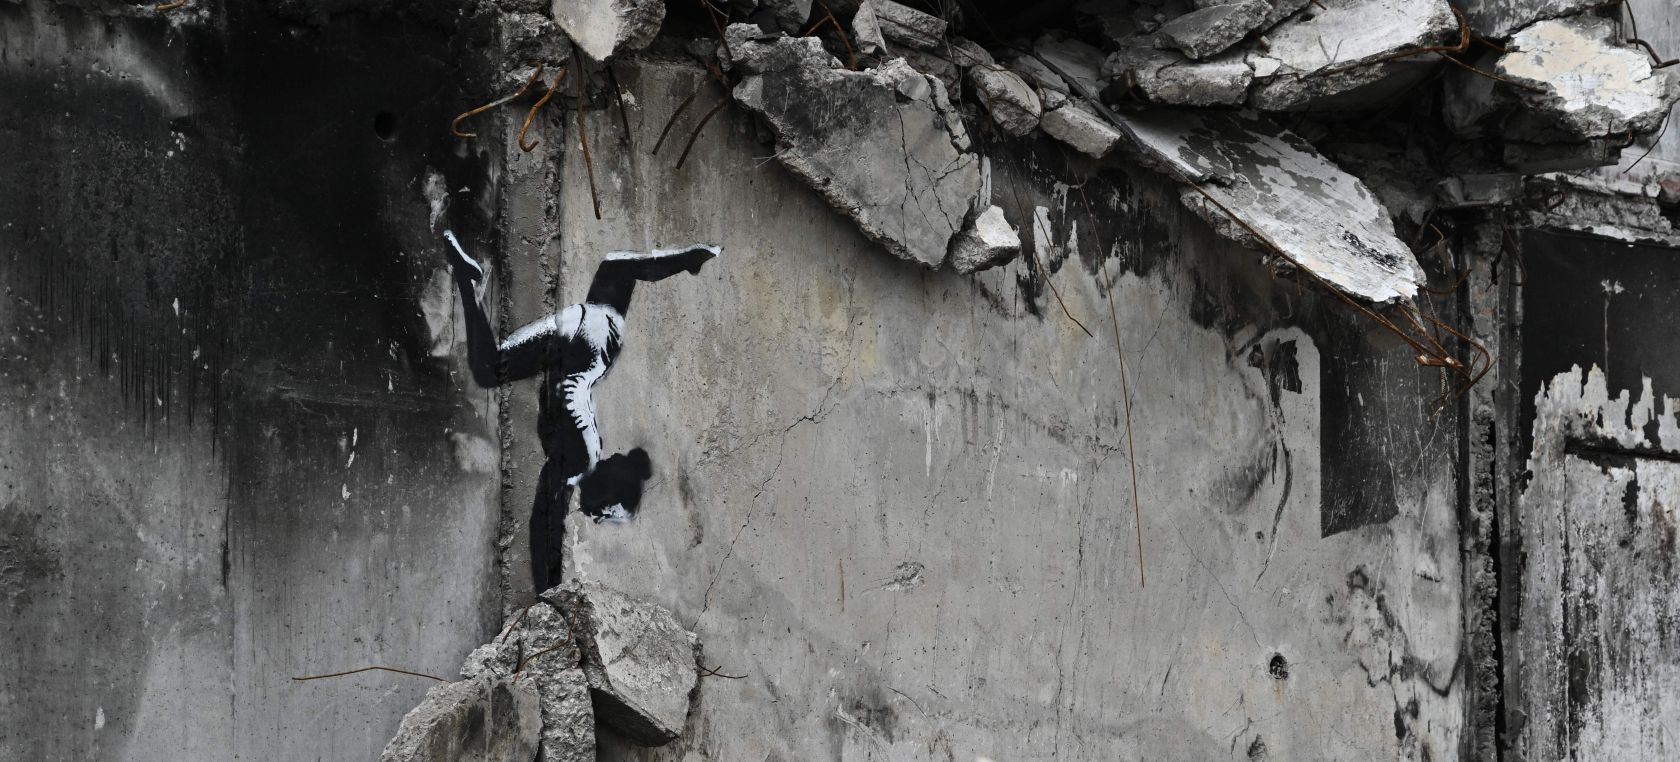 Banksy confirma que hizo siete murales nuevos en diferentes lugares de Ucrania